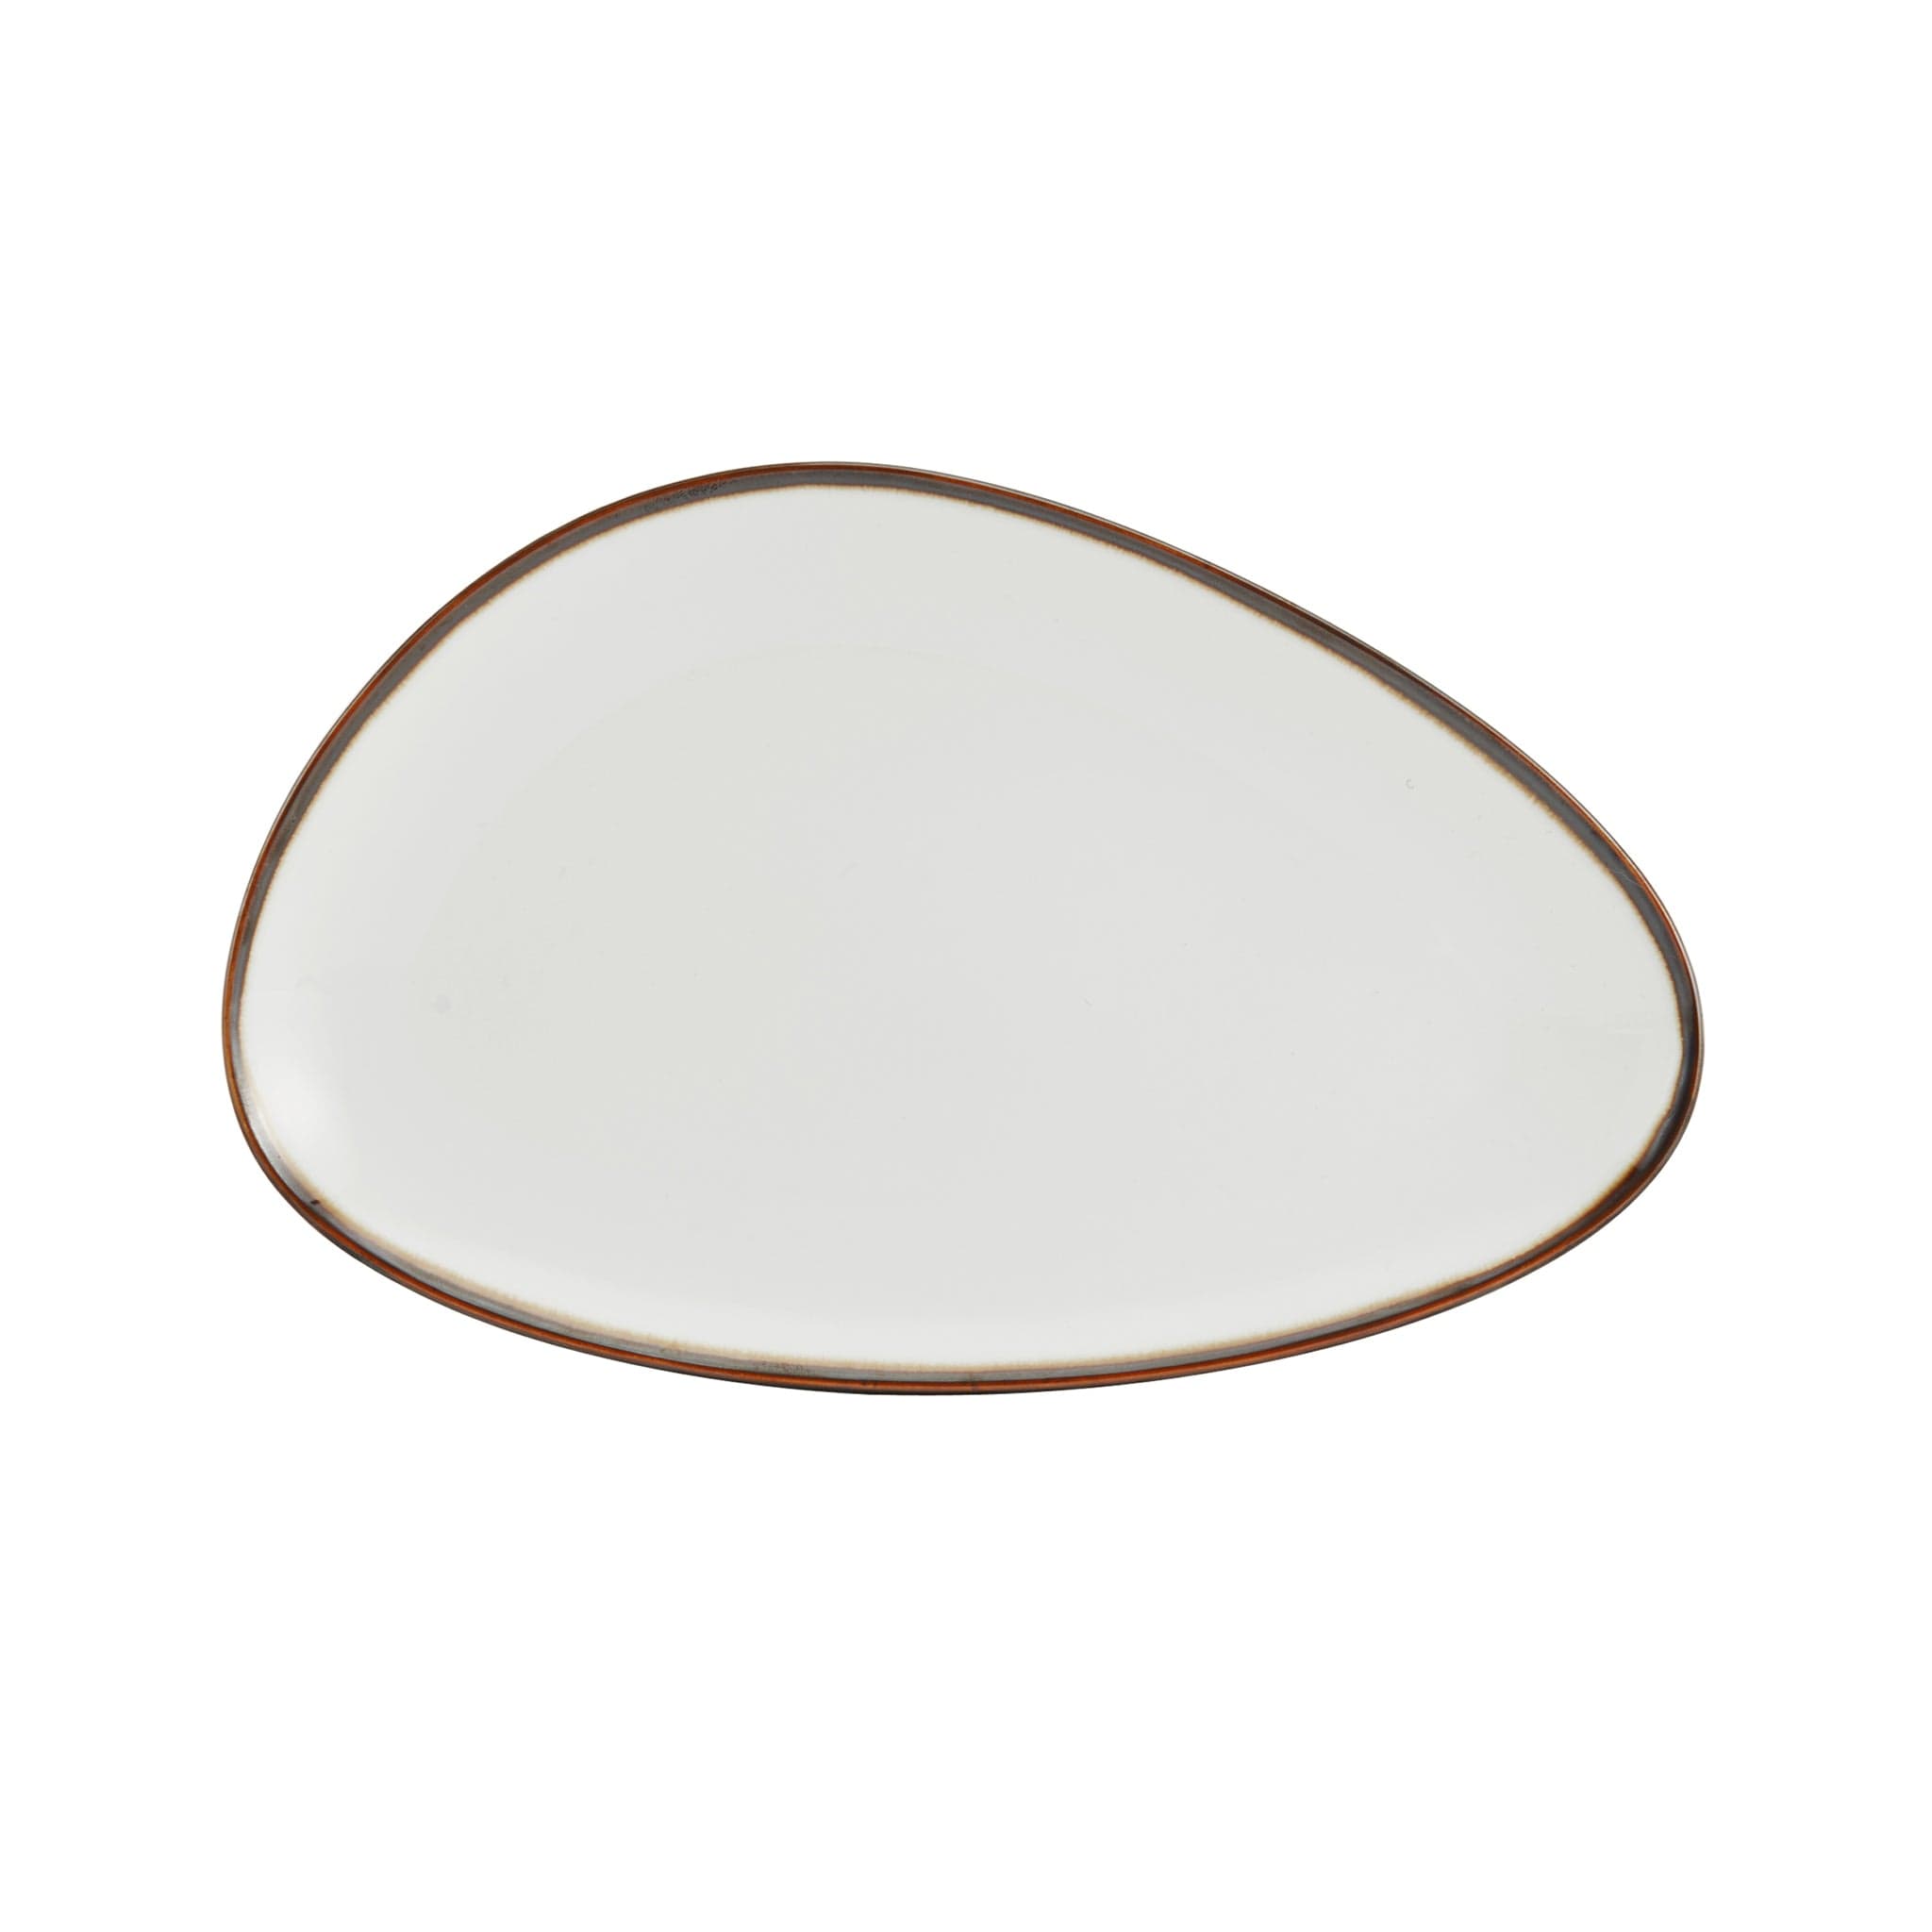 Lodge Porcelain Platter 11x6" Cream White